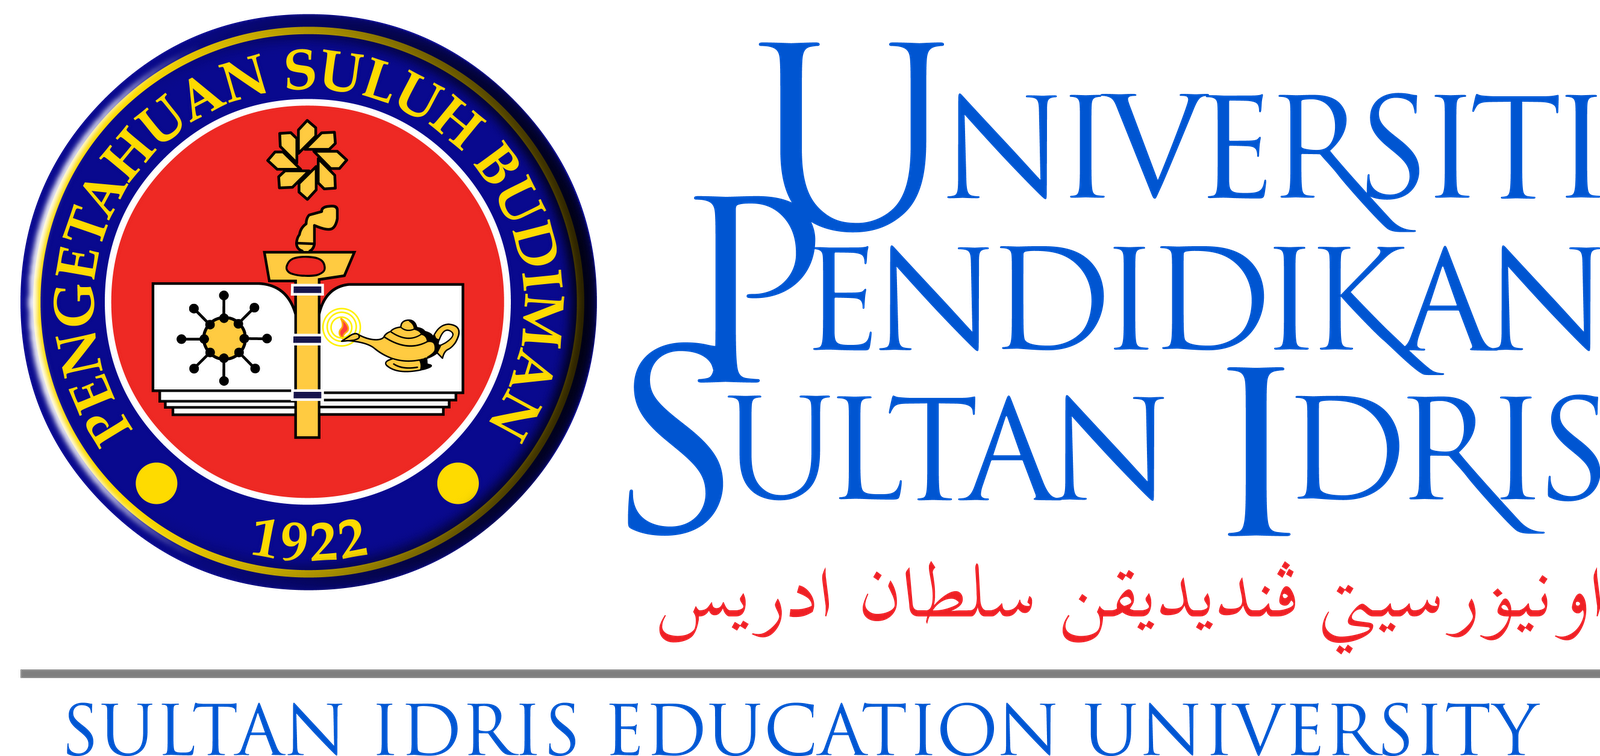 universiti perguruan sultan idris